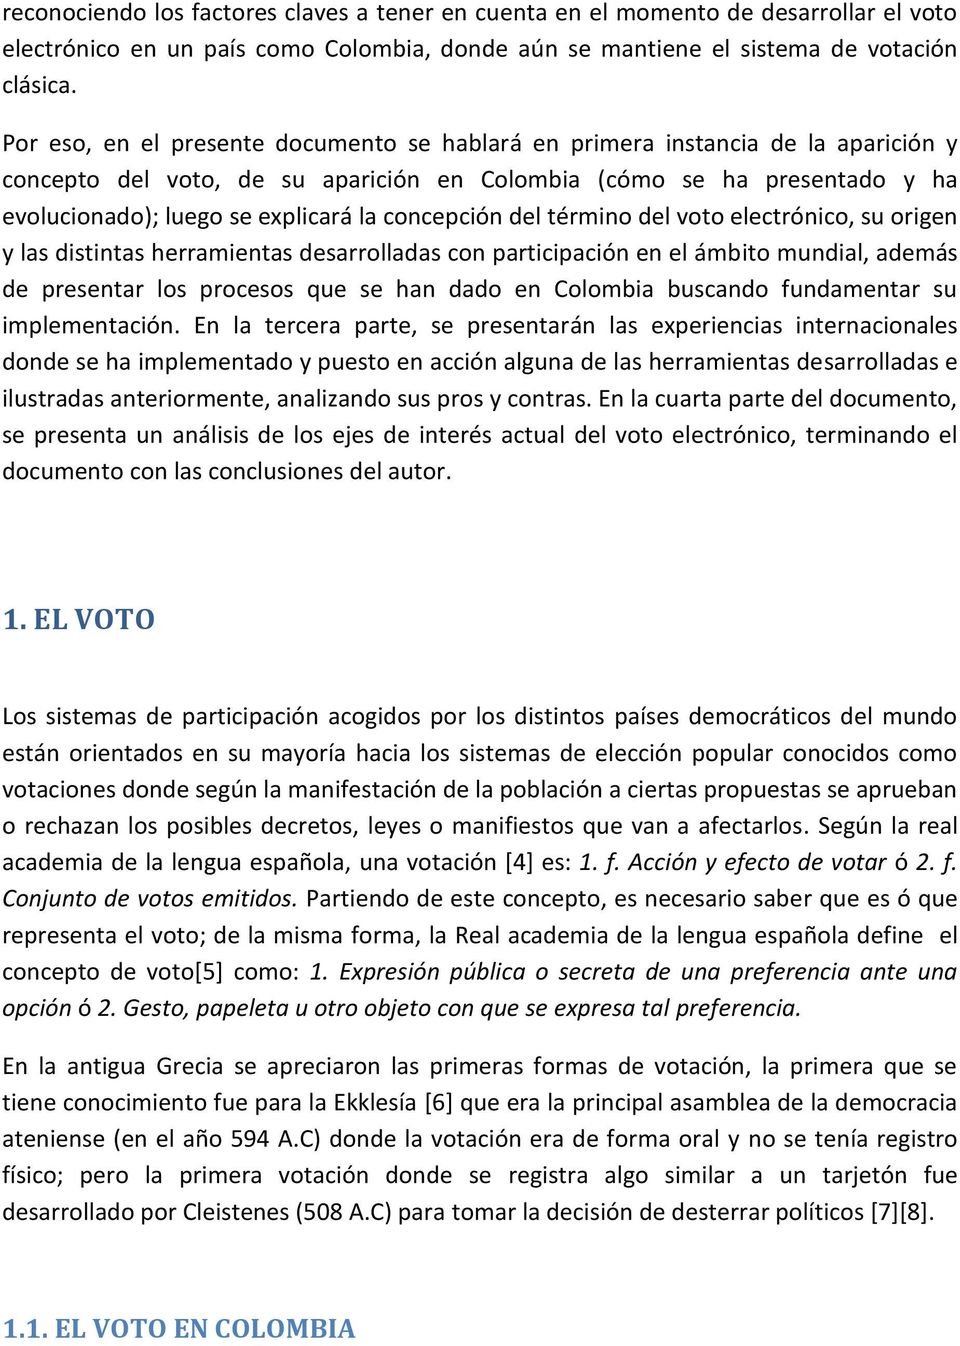 concepción del término del voto electrónico, su origen y las distintas herramientas desarrolladas con participación en el ámbito mundial, además de presentar los procesos que se han dado en Colombia